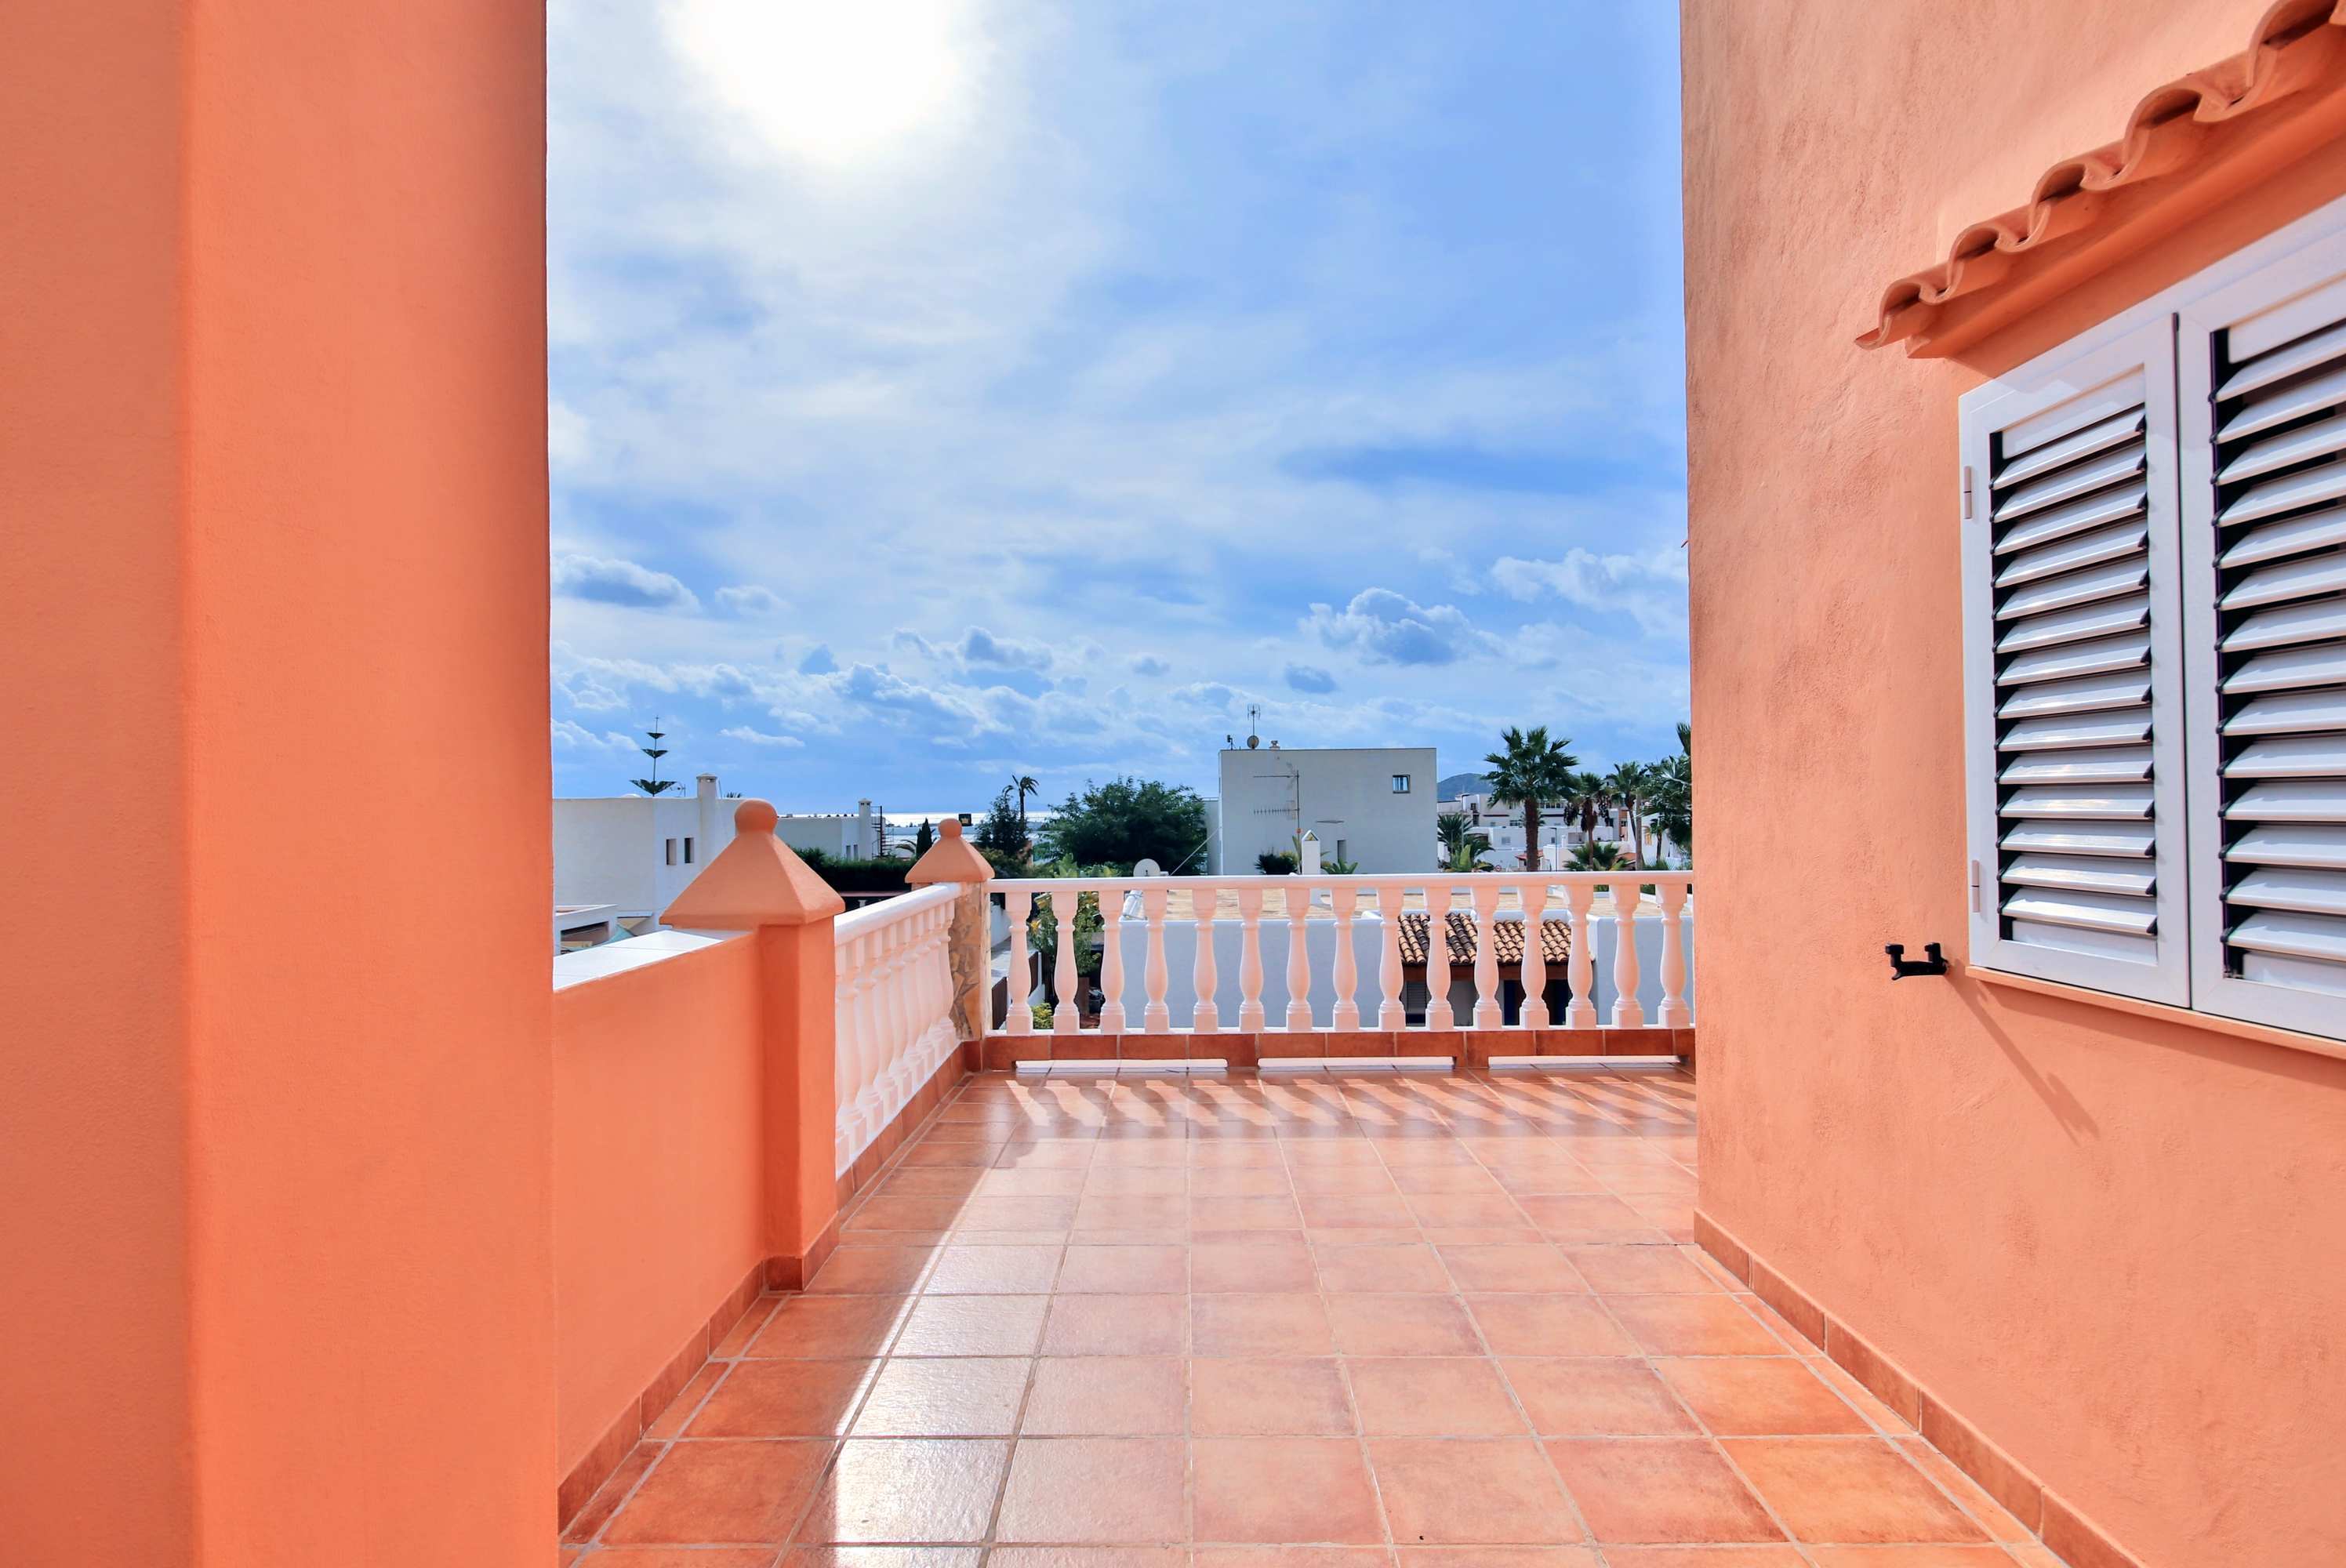 Schönes Haus mit privatem Pool 5 Minuten von Ibiza entfernt